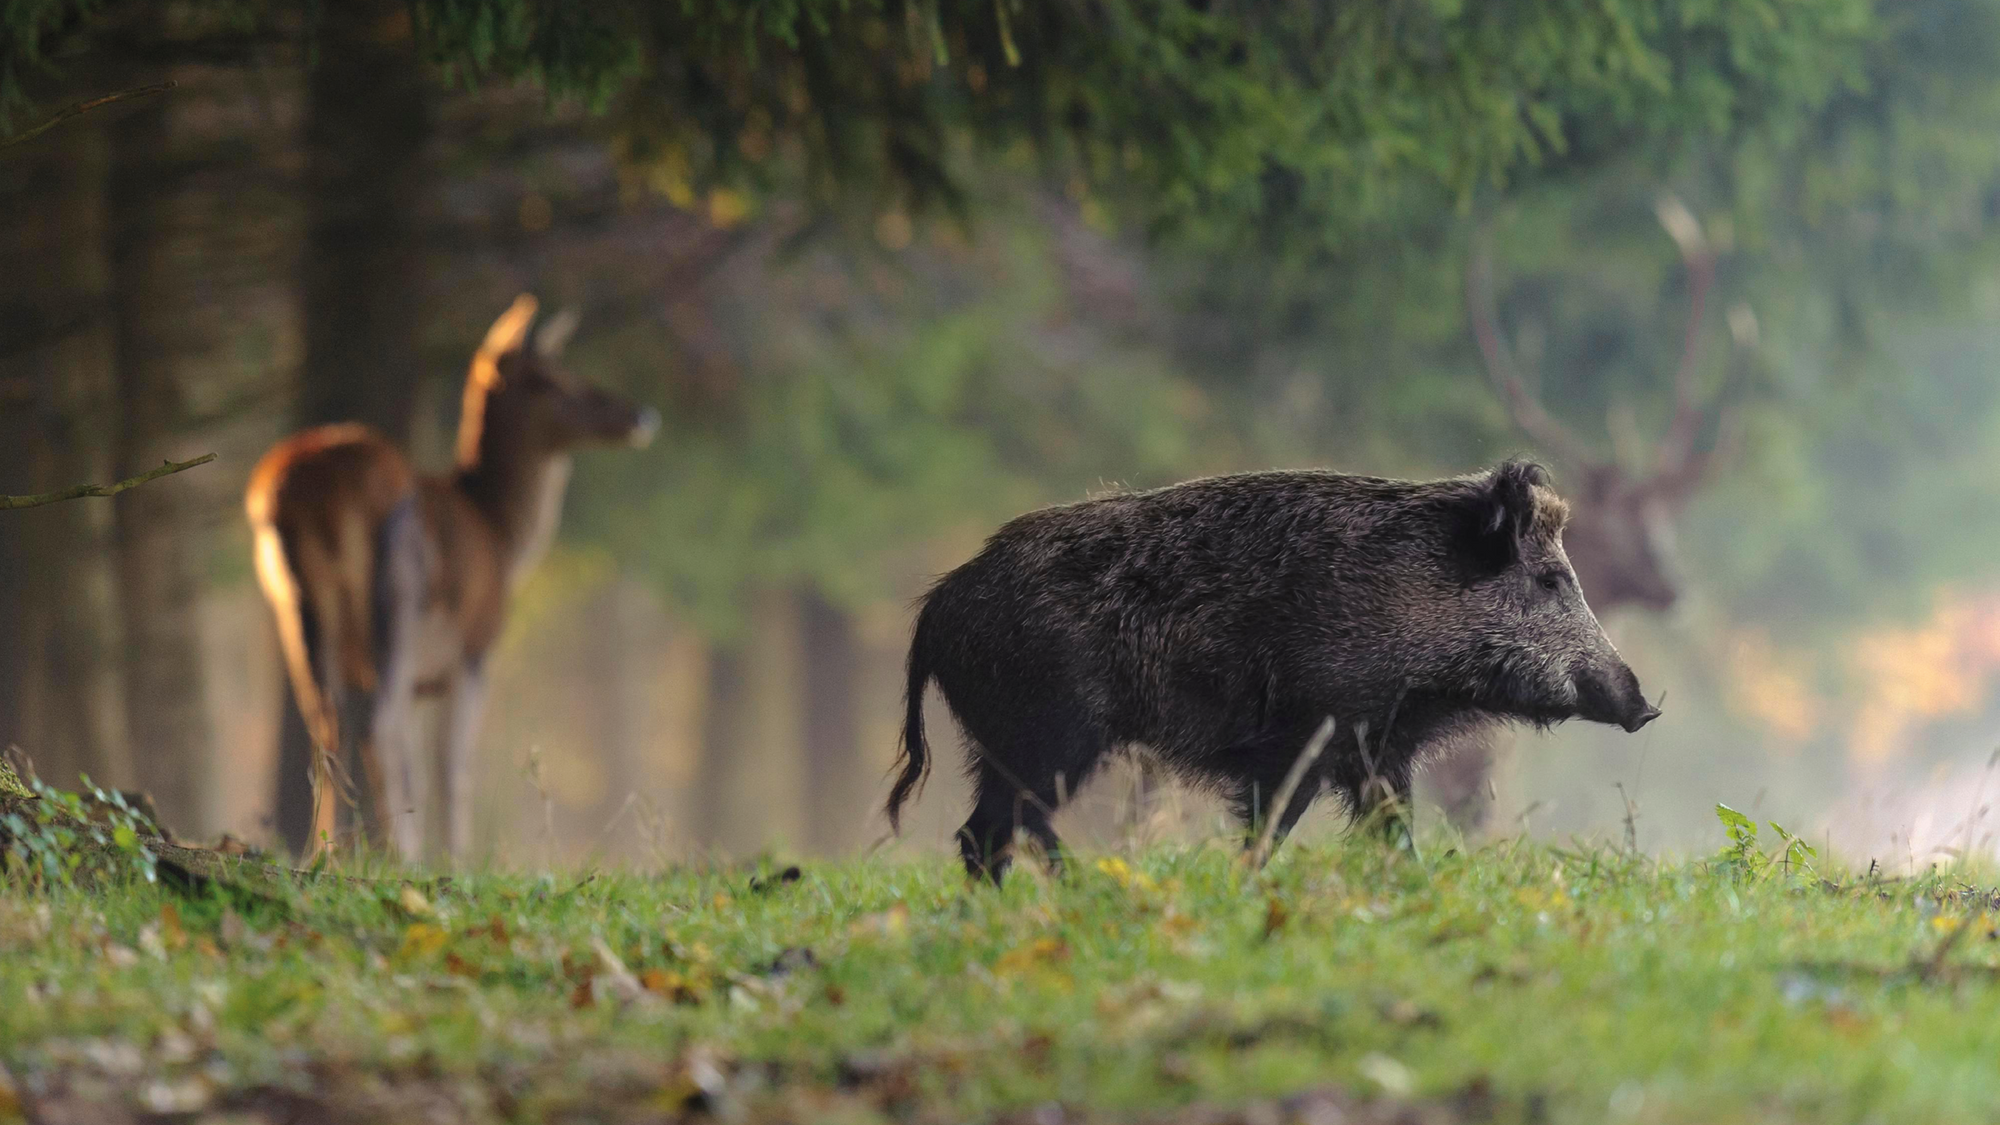 KRUEDENER®️ Keilerschutz Motiv "Wildschwein im Wald" Jagdausrüstung